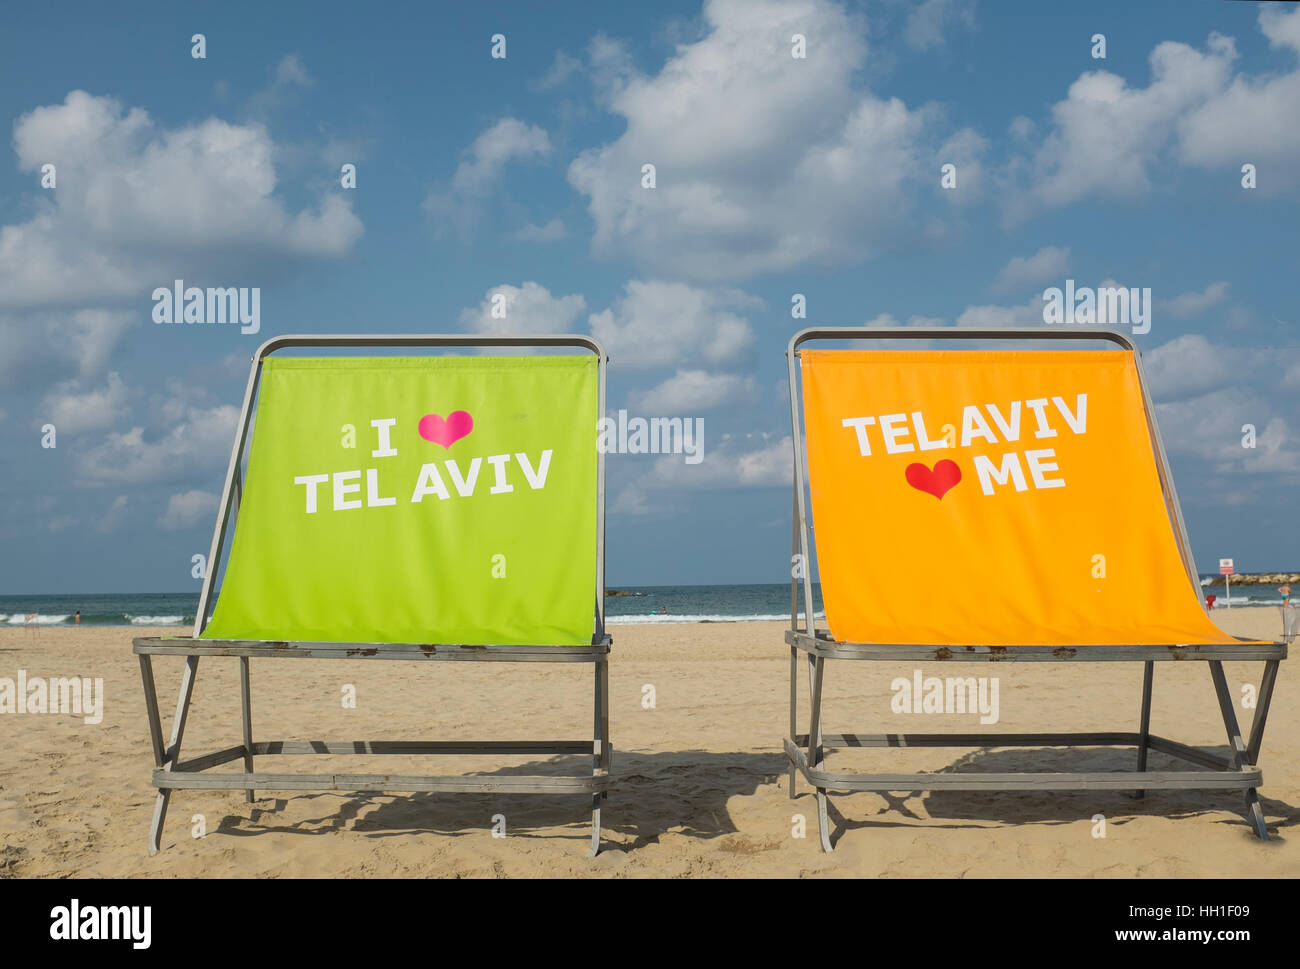 Io amo Tel Aviv, Tel Aviv mi ama, Tel Aviv beach front, Israele Foto Stock